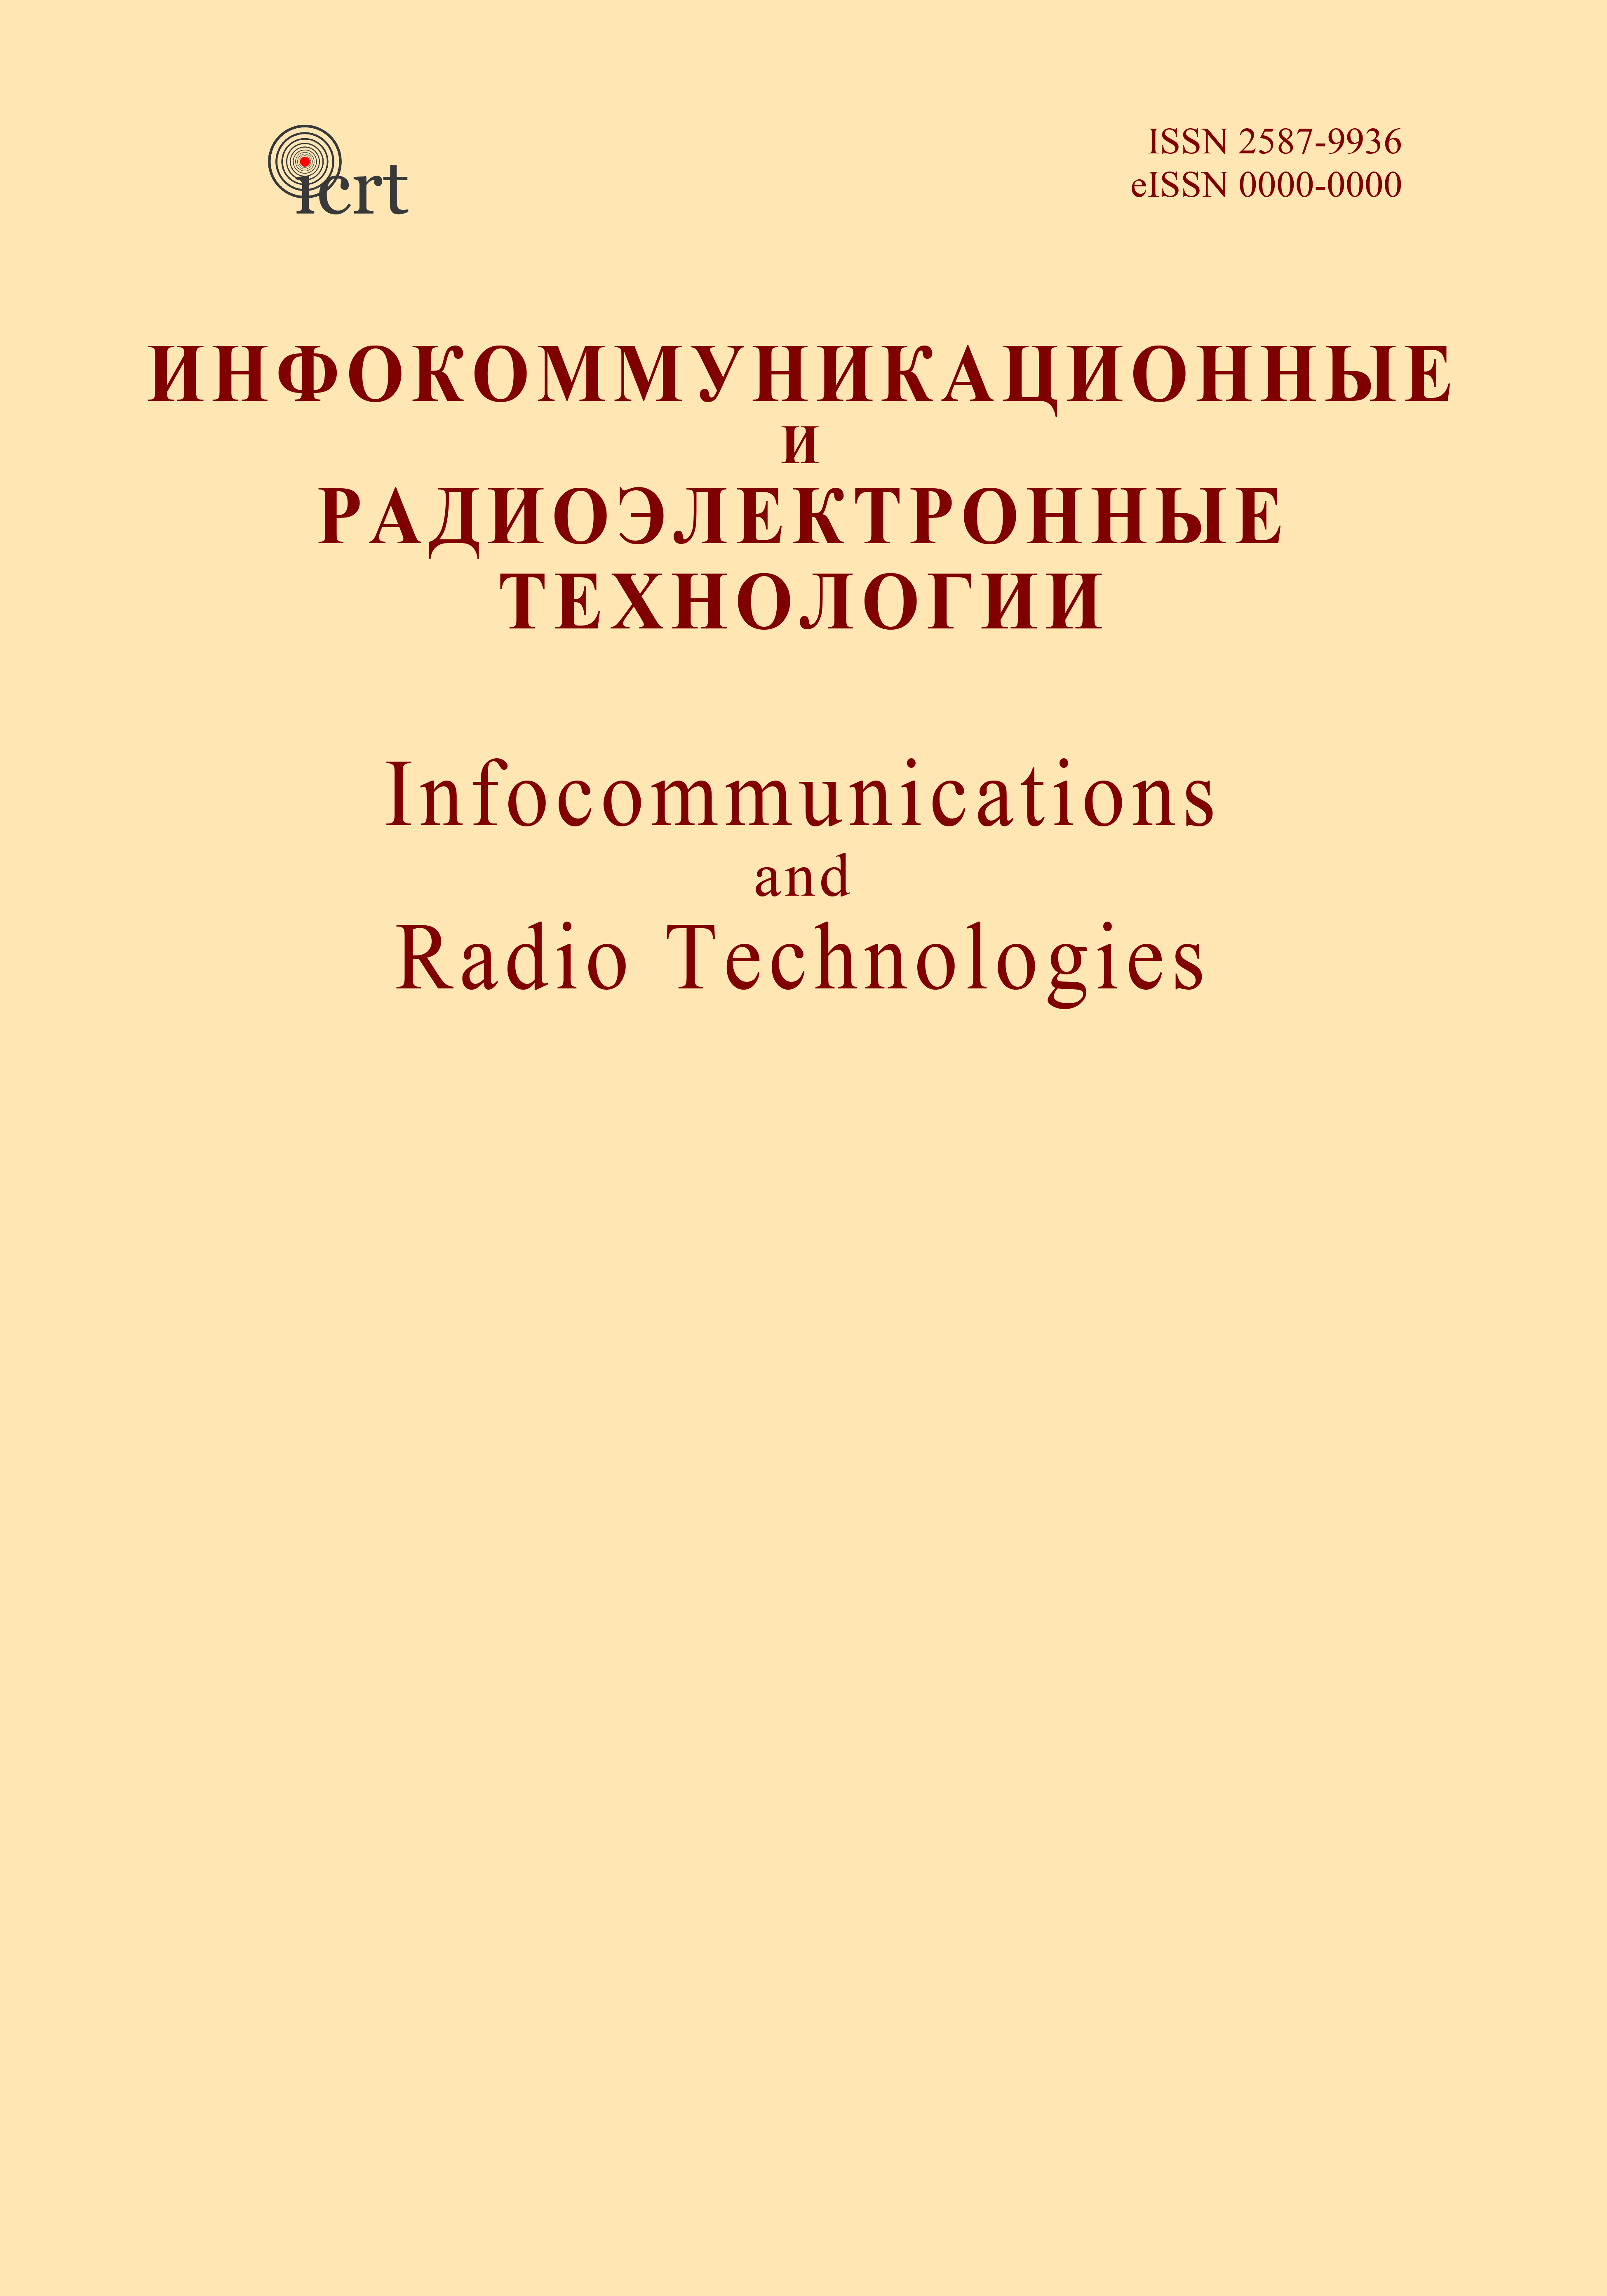             Конкуренты аудиона на рынке радиотехнологий
    